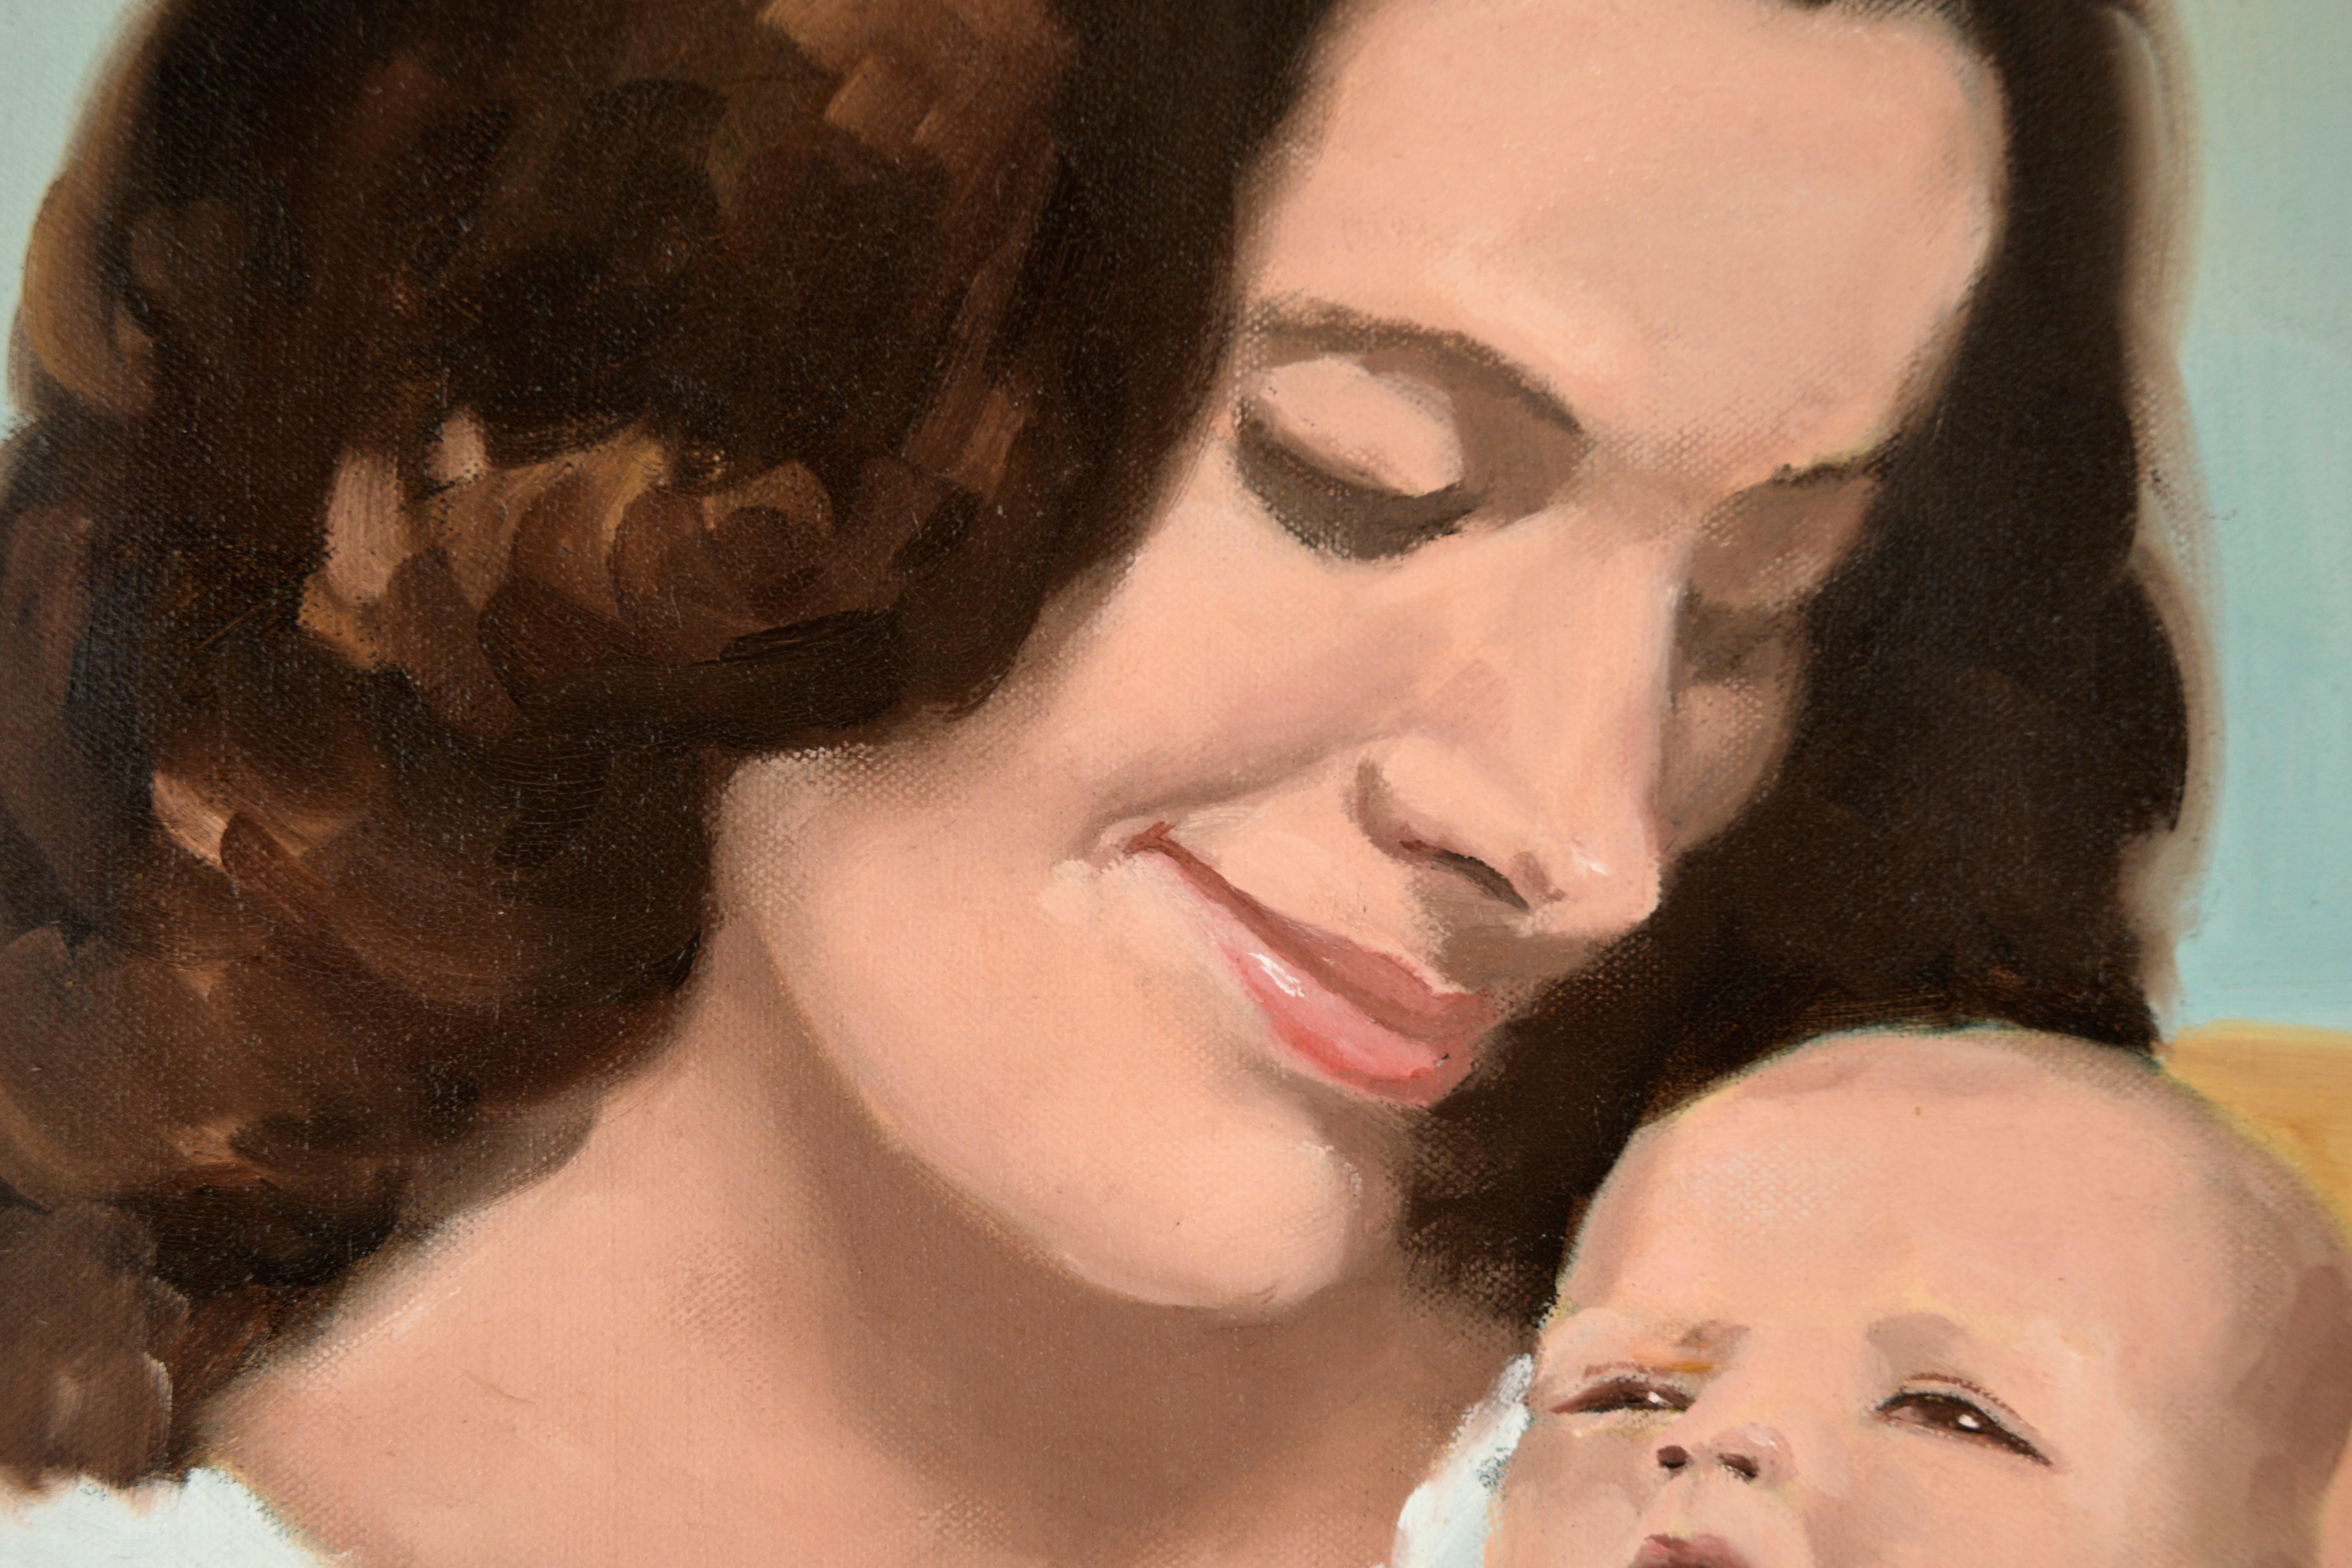 Porträt einer Frau und eines Kindes in Weiß – Öl auf Leinwand Natalie Wood

Elegantes Porträt einer Frau und ihres neugeborenen Kindes (*Natalie Wood und Natasha) von Cindy Gin (Cindy Lin) (Amerikanerin, 20. Jahrhundert). Eine Frau mit dunkelbraunem